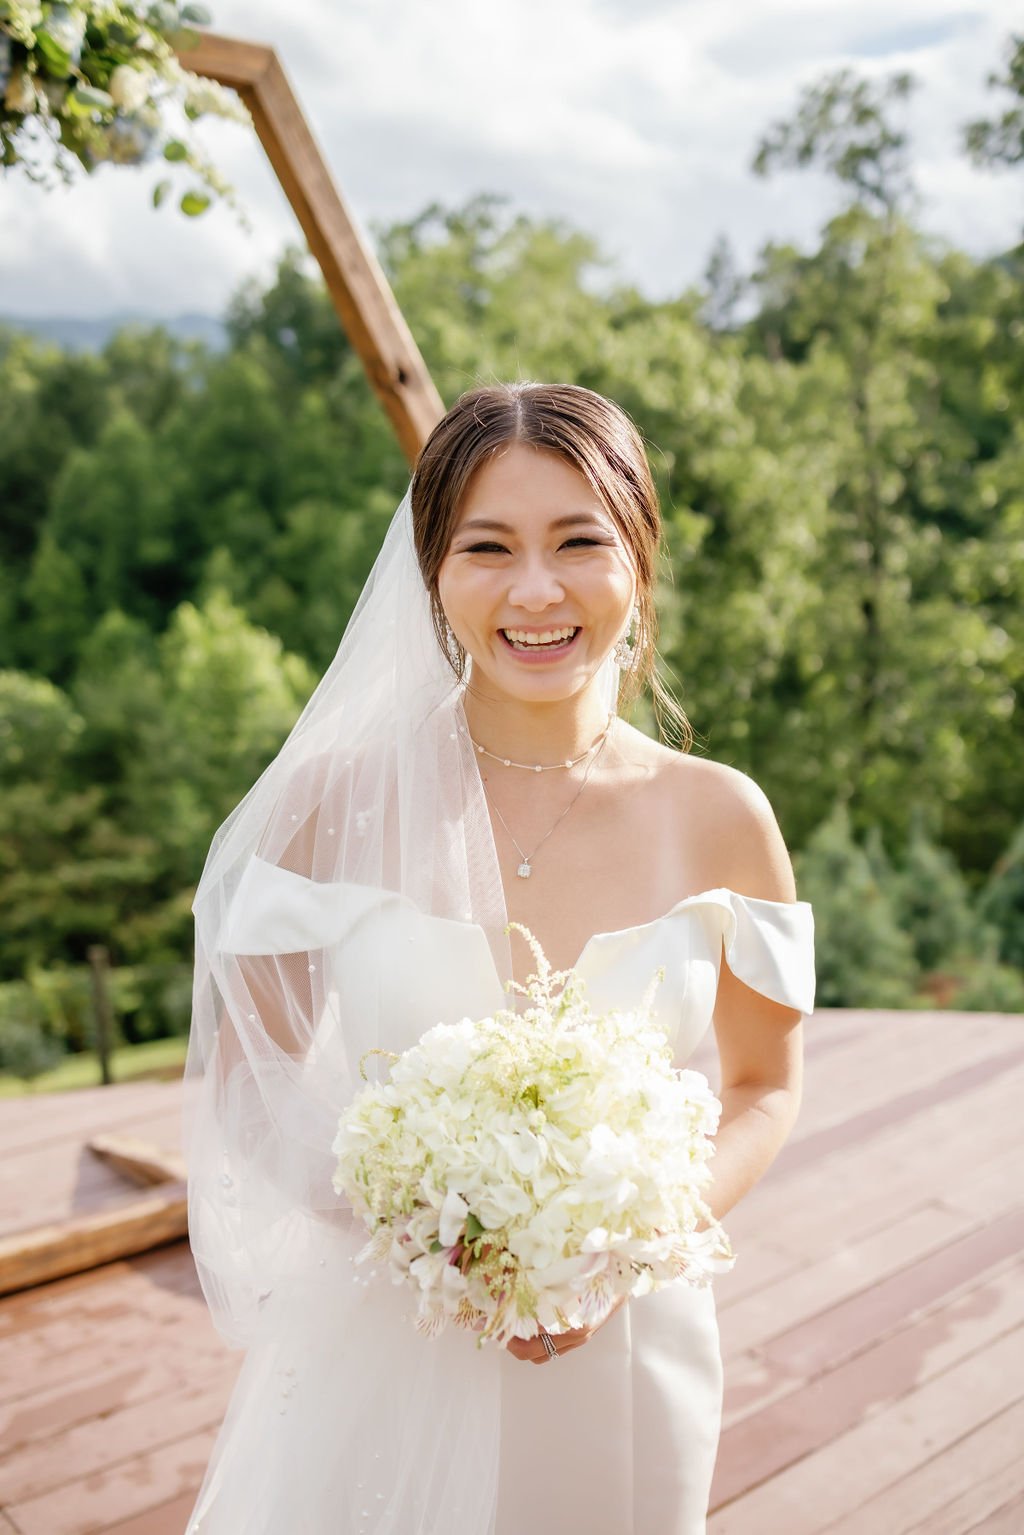 gatlinburg-photographer-mountain-mist-farms-wedding-venue-bride-bridal-bouquet